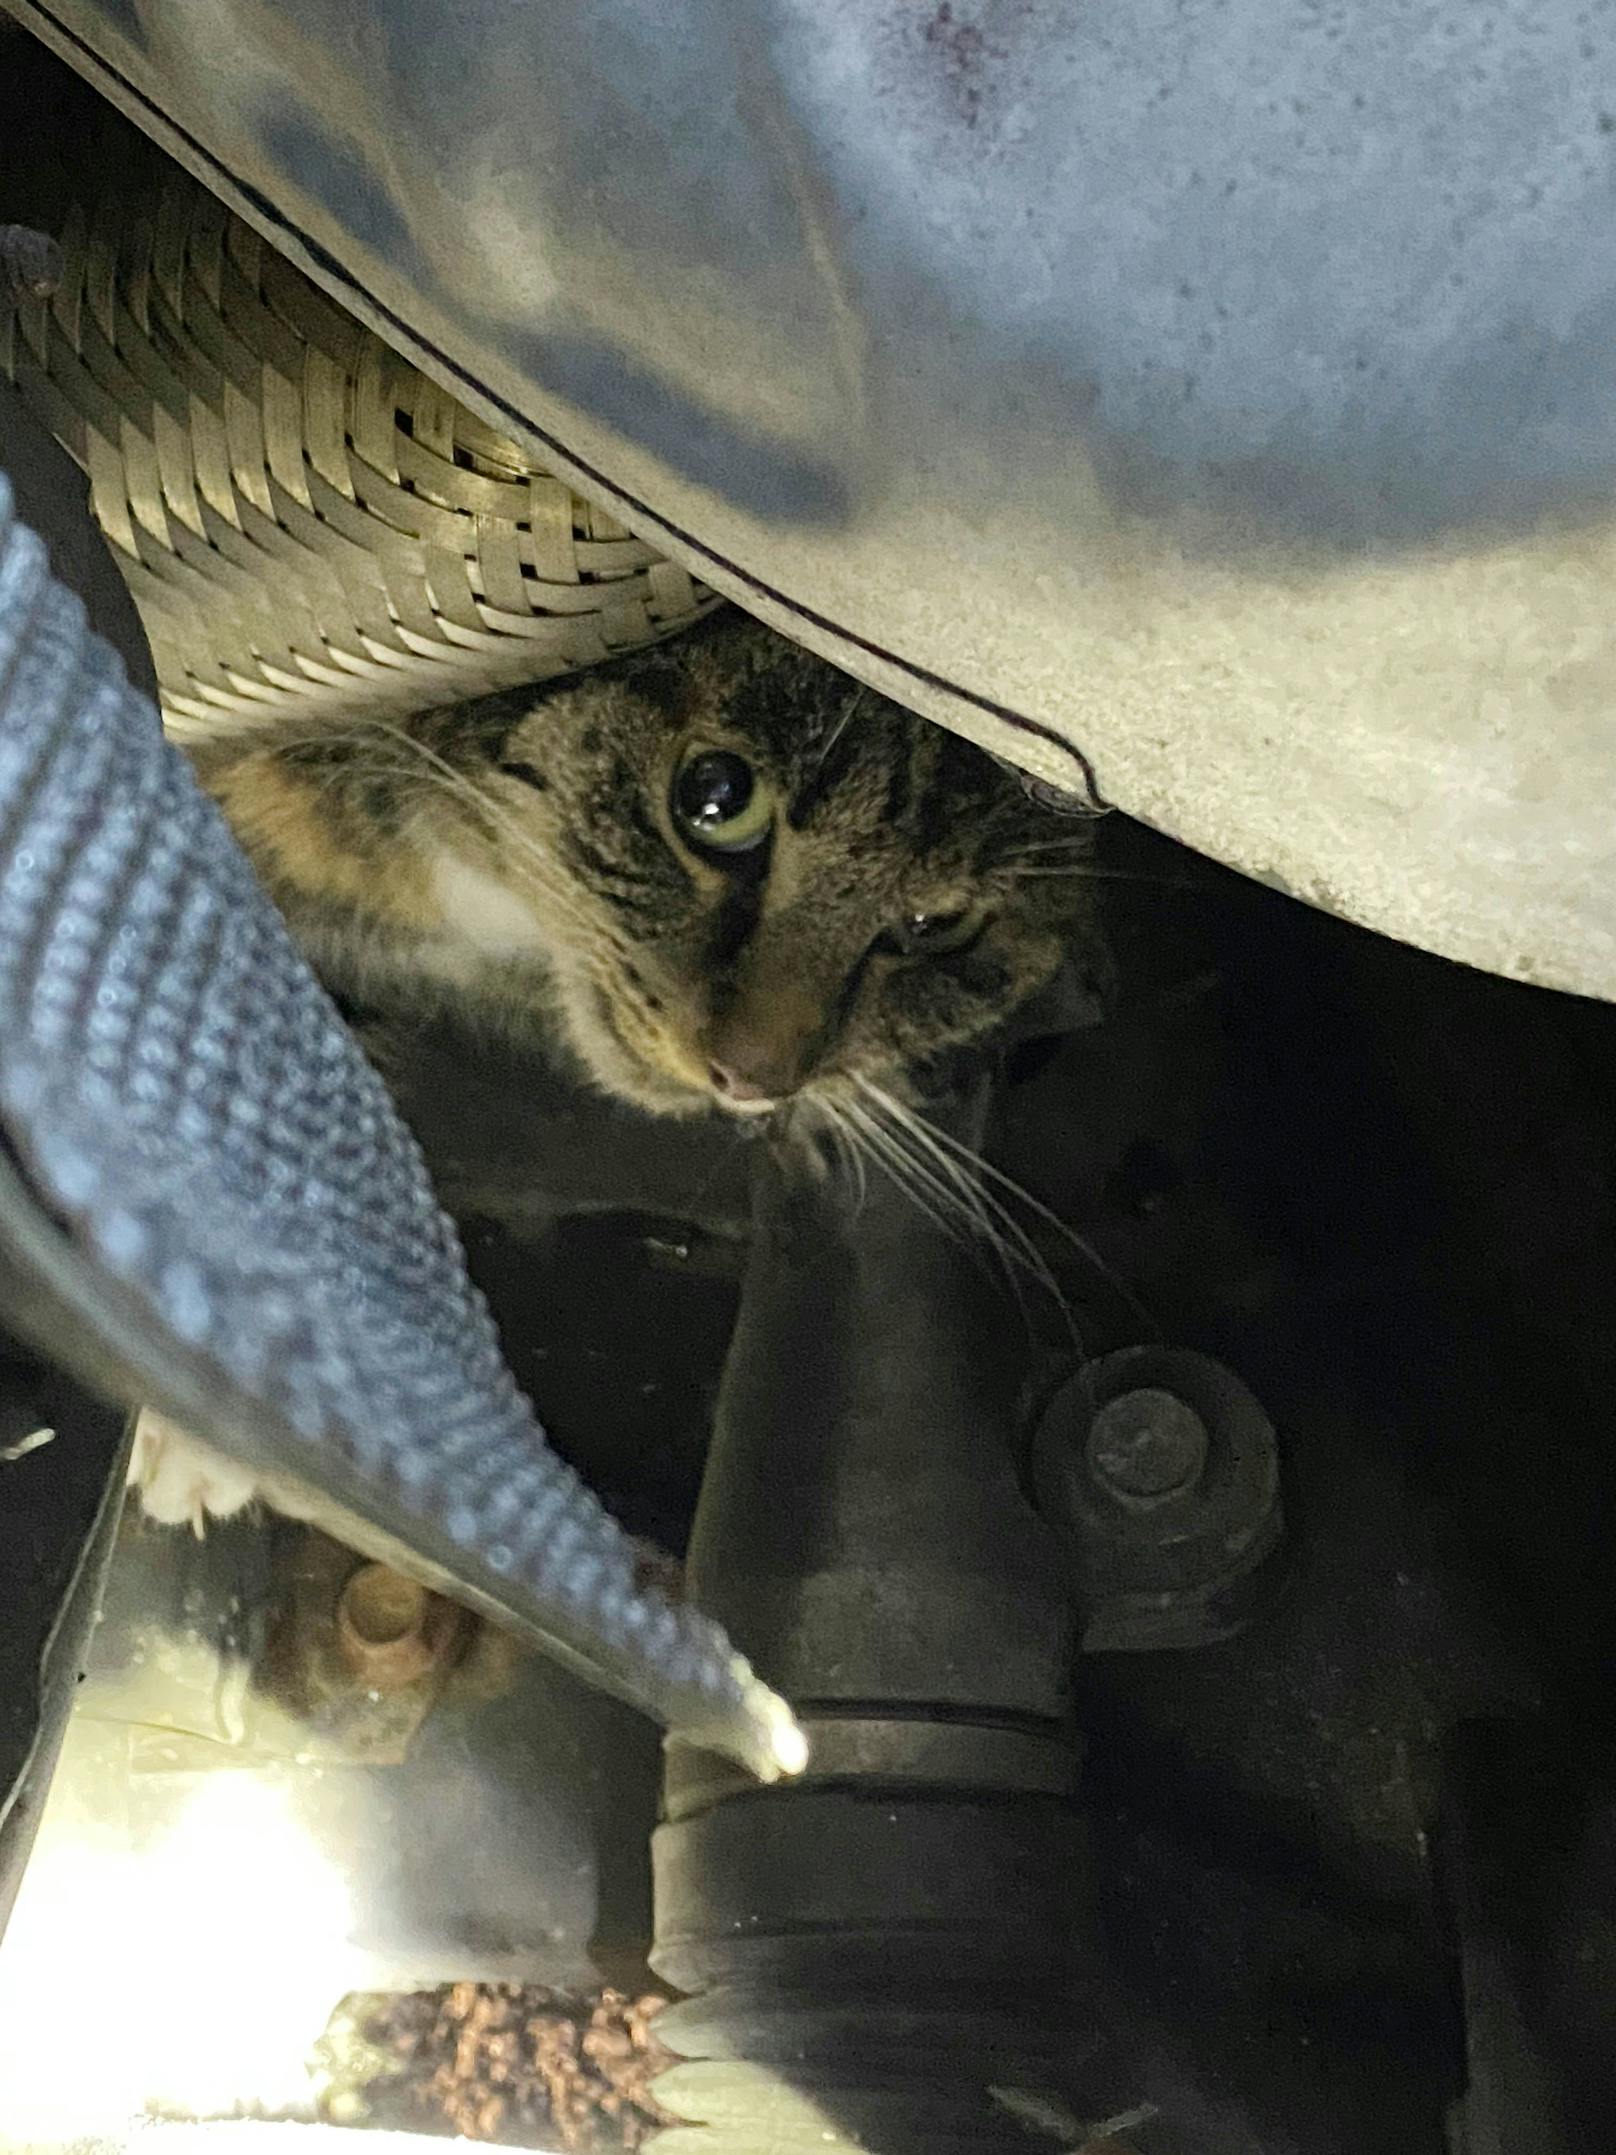 Die im Auto eingeklemmte Katze konnte von Feuerwehr und Tierarzt befreit werden.